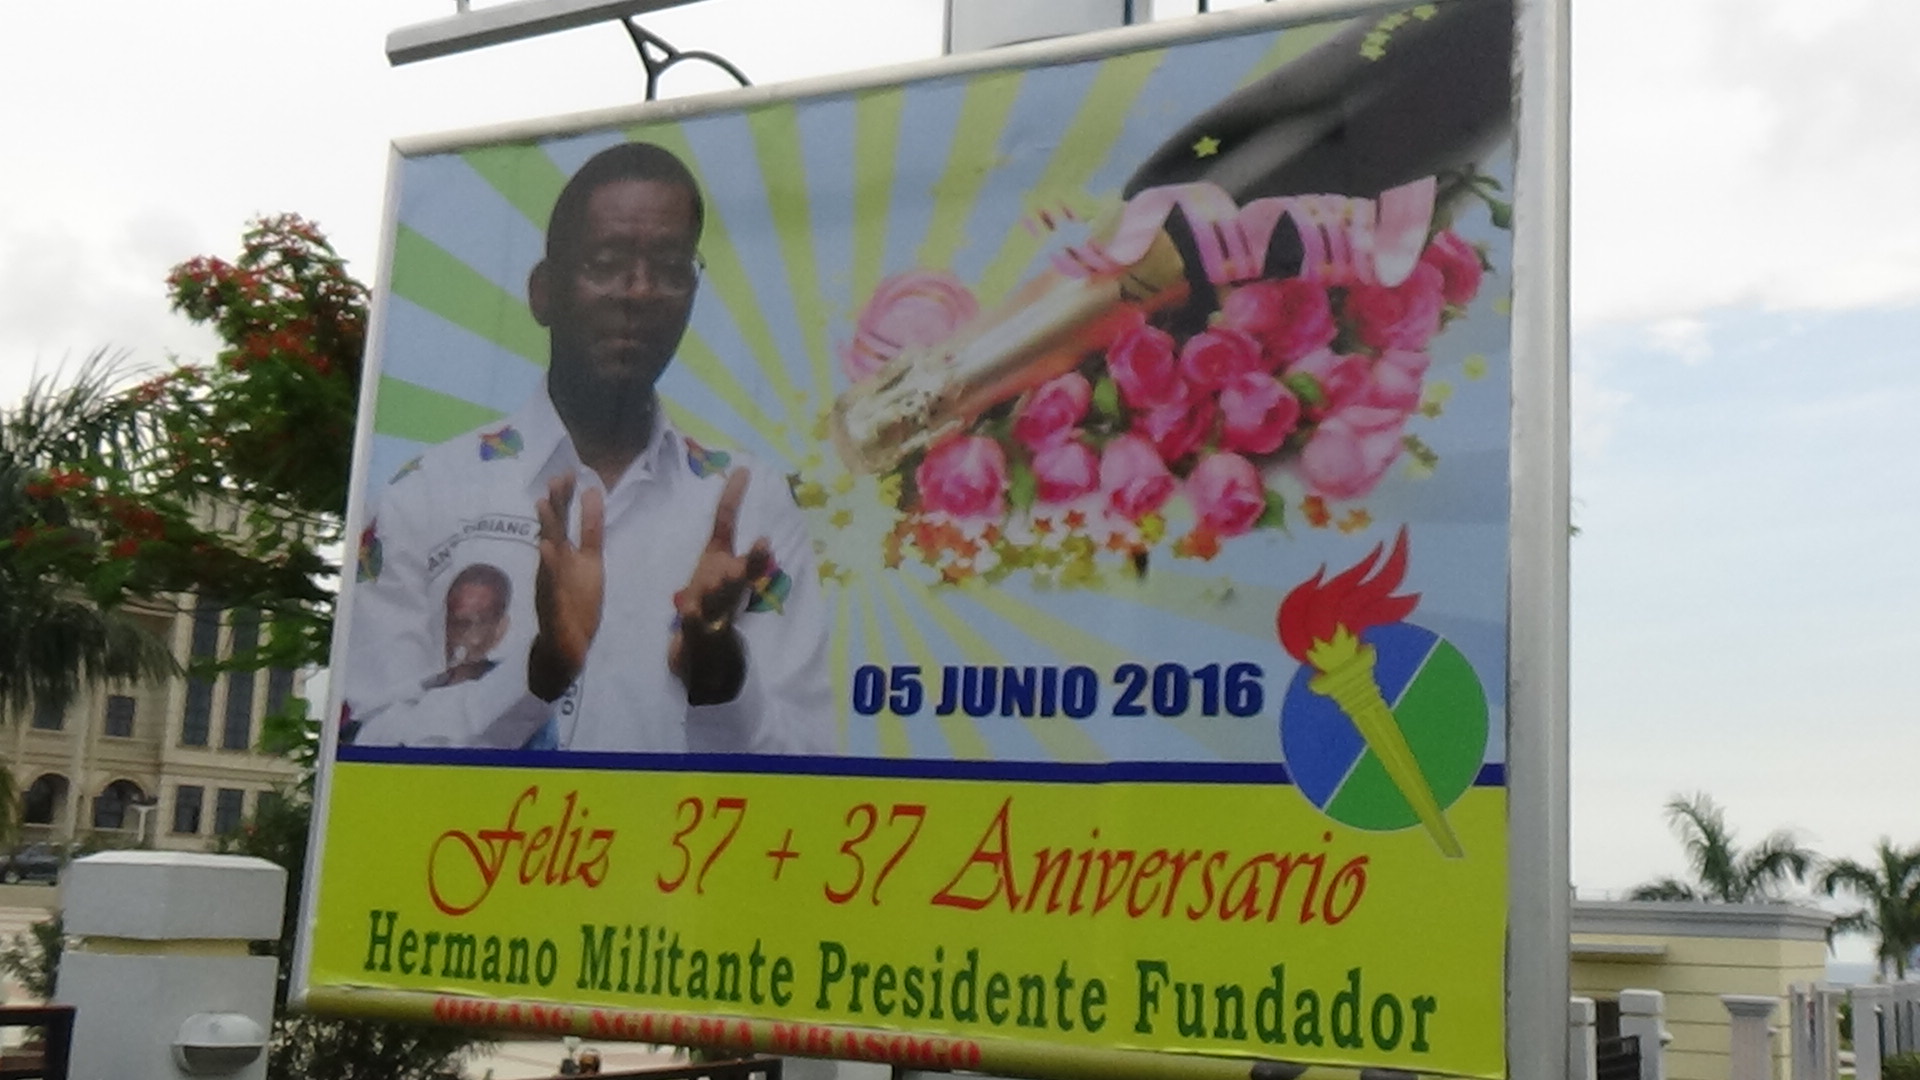 Obiang 05 de junio 2016 - 2